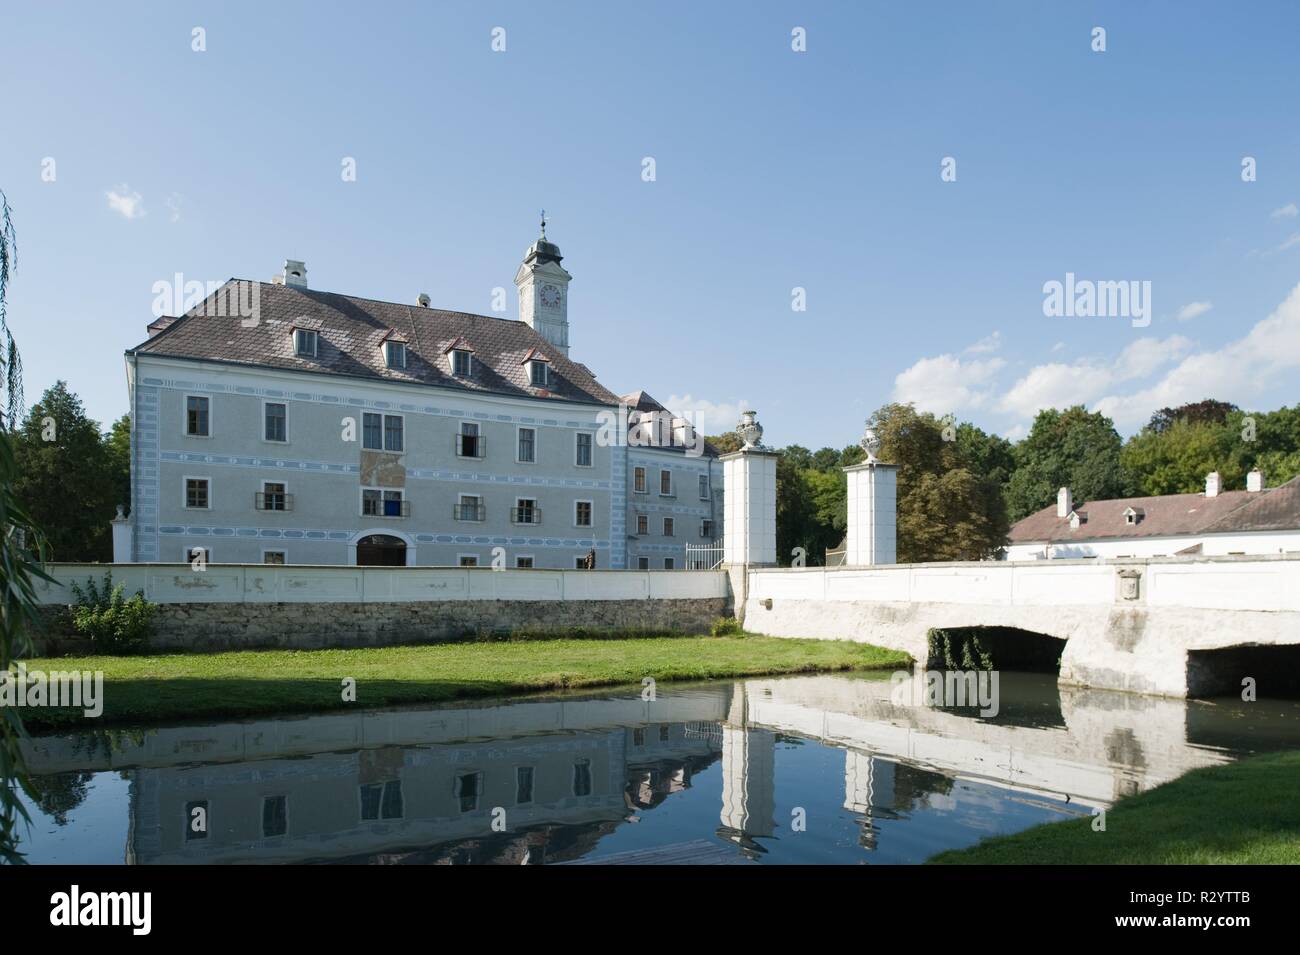 Das Schloss Ebergassing steht als ehemalige Wasserburg im Osten der Gemeinde Ebergassing im Bezirk Bruck an der Leitha in Niederösterreich. Das Schlos Stock Photo